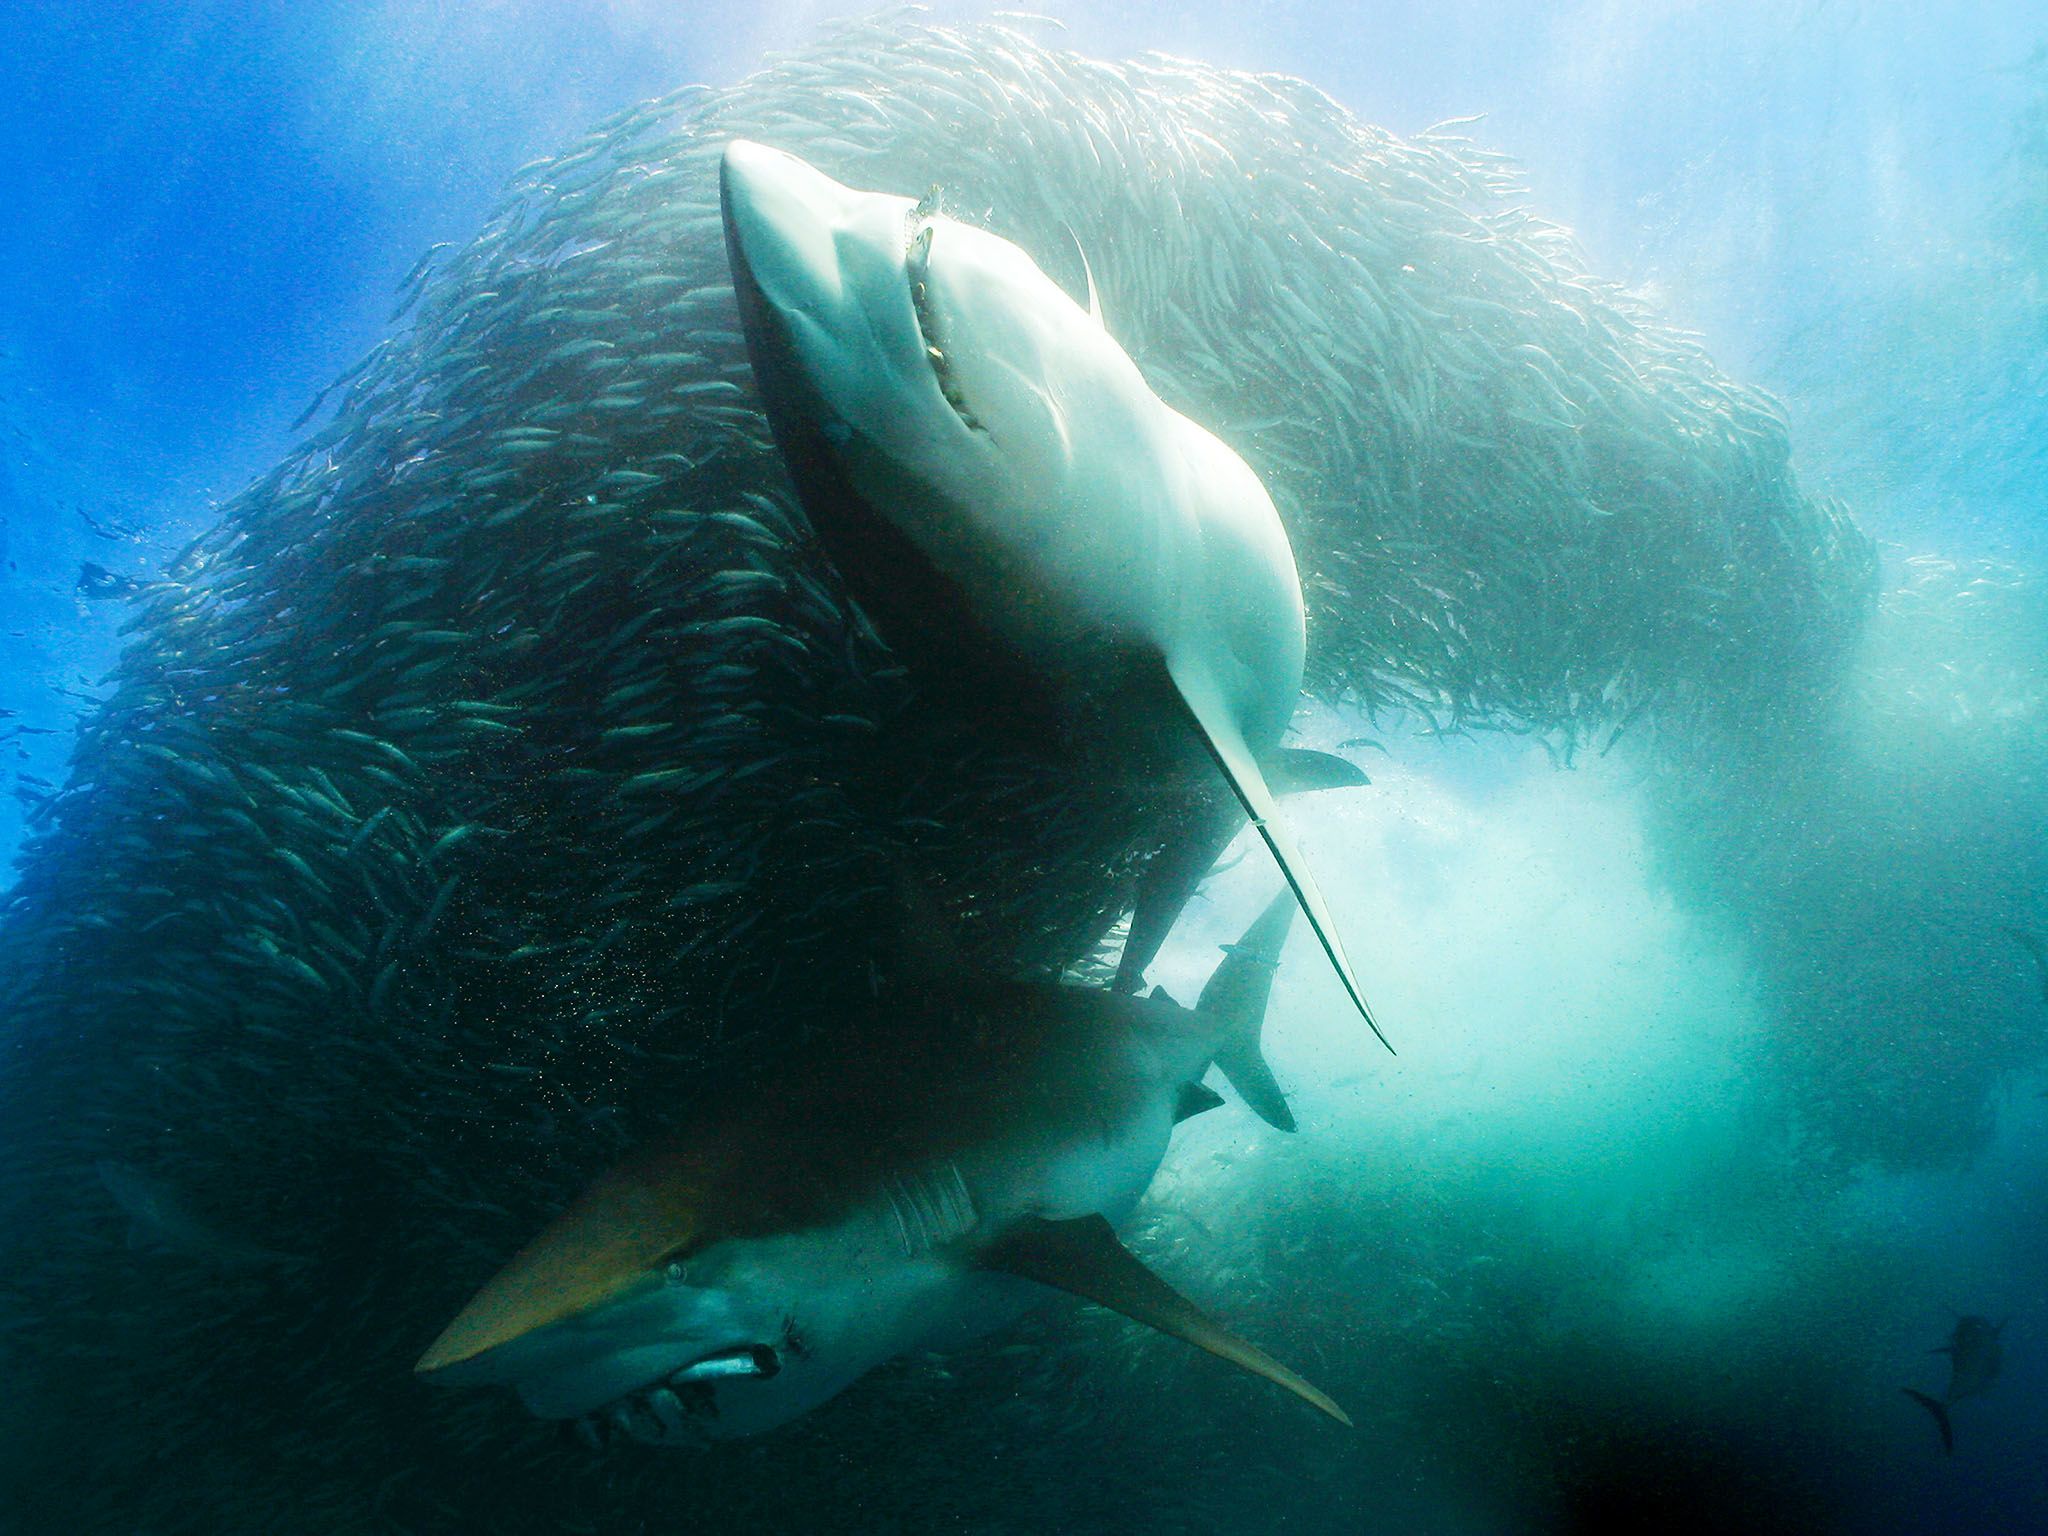 جنوب أفريقيا: منظر من أعماق البحر لسمكتين من أسماك... [Photo of the day - أغسطس 2015]